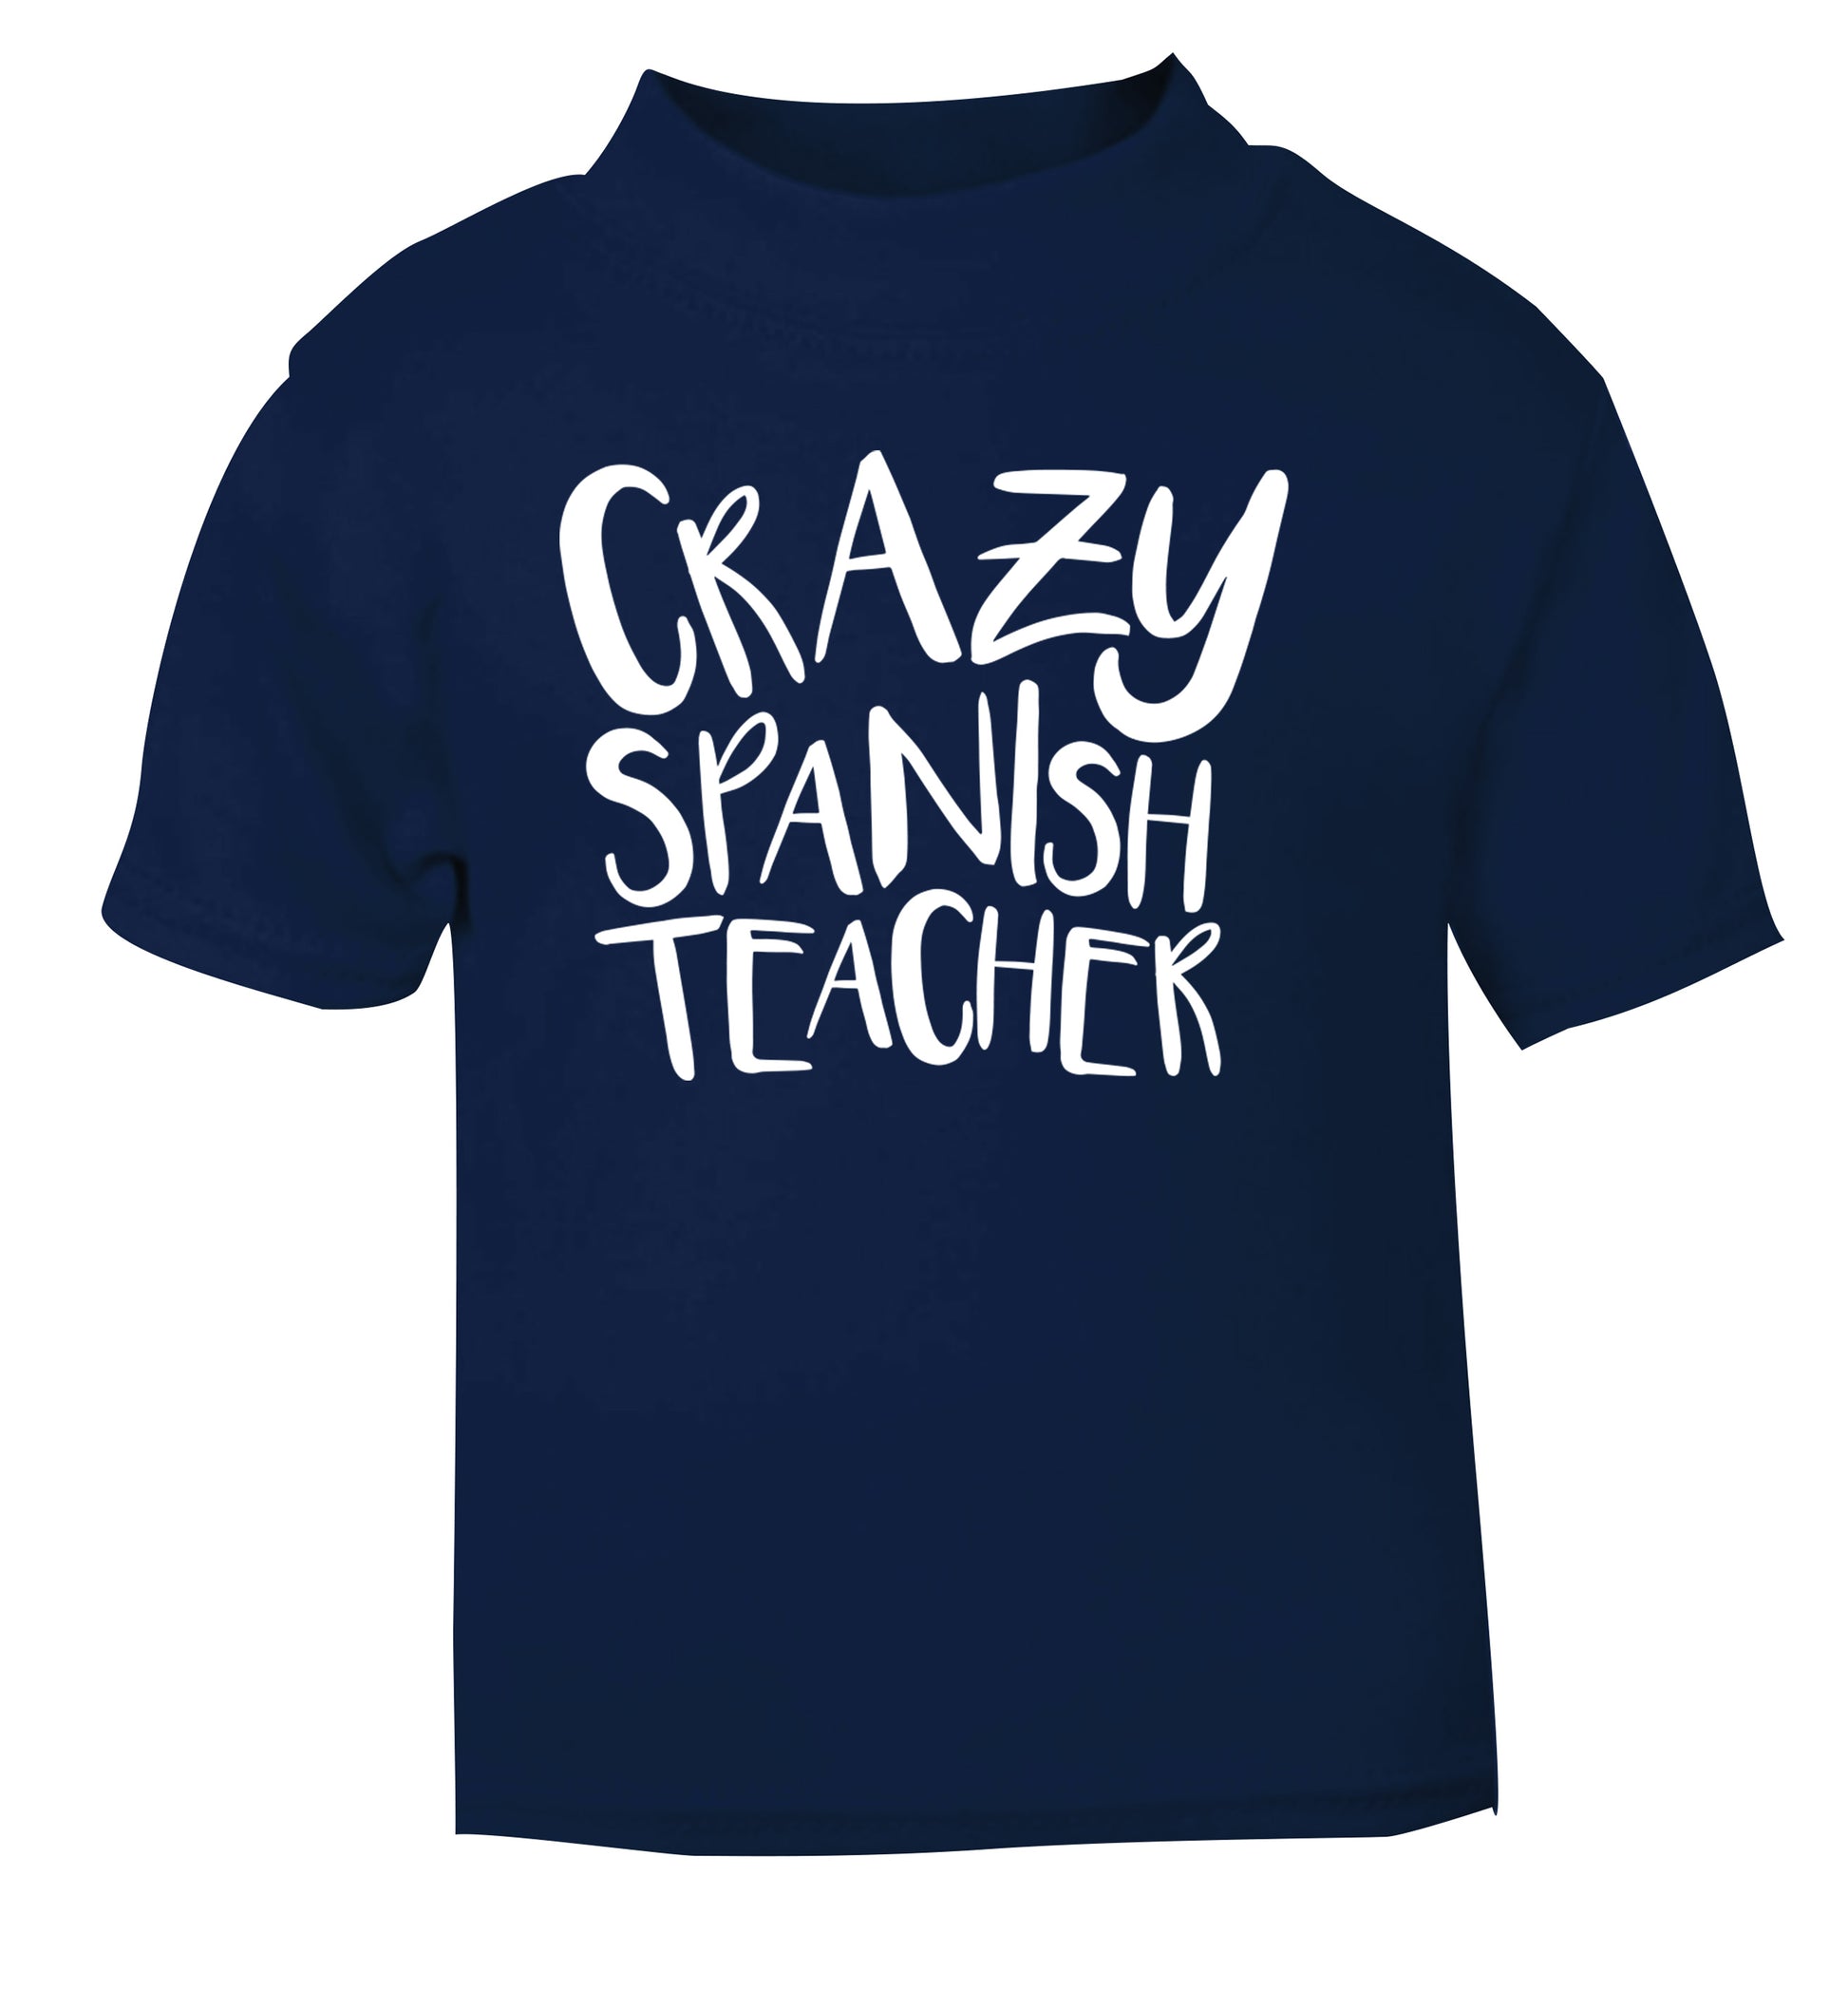 Crazy spanish teacher navy Baby Toddler Tshirt 2 Years